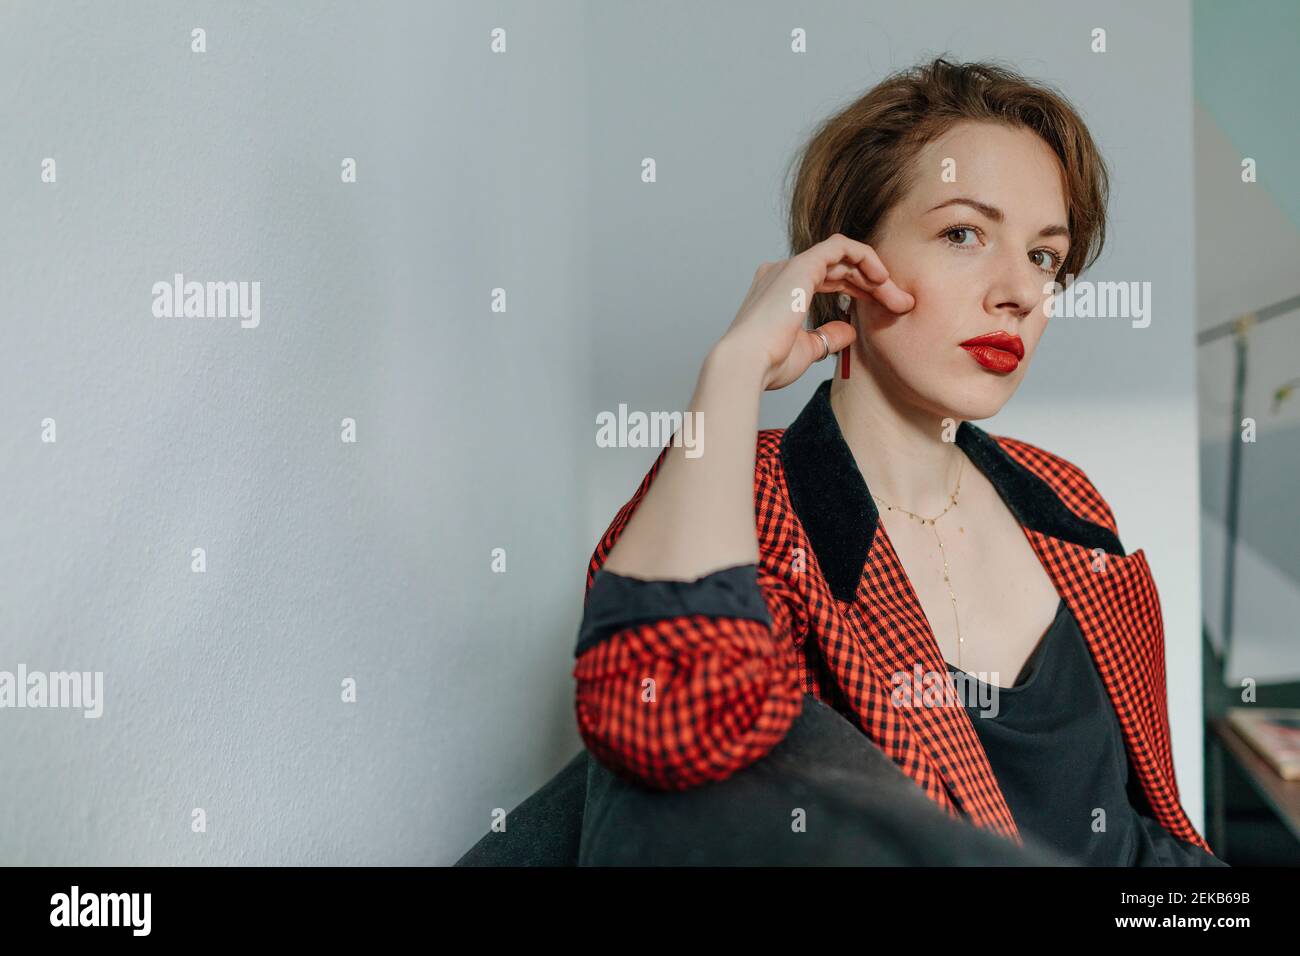 Selbstbewusste junge Frau mit rot kariertem Blazer, der gegen Weiß sitzt Wand Stockfoto